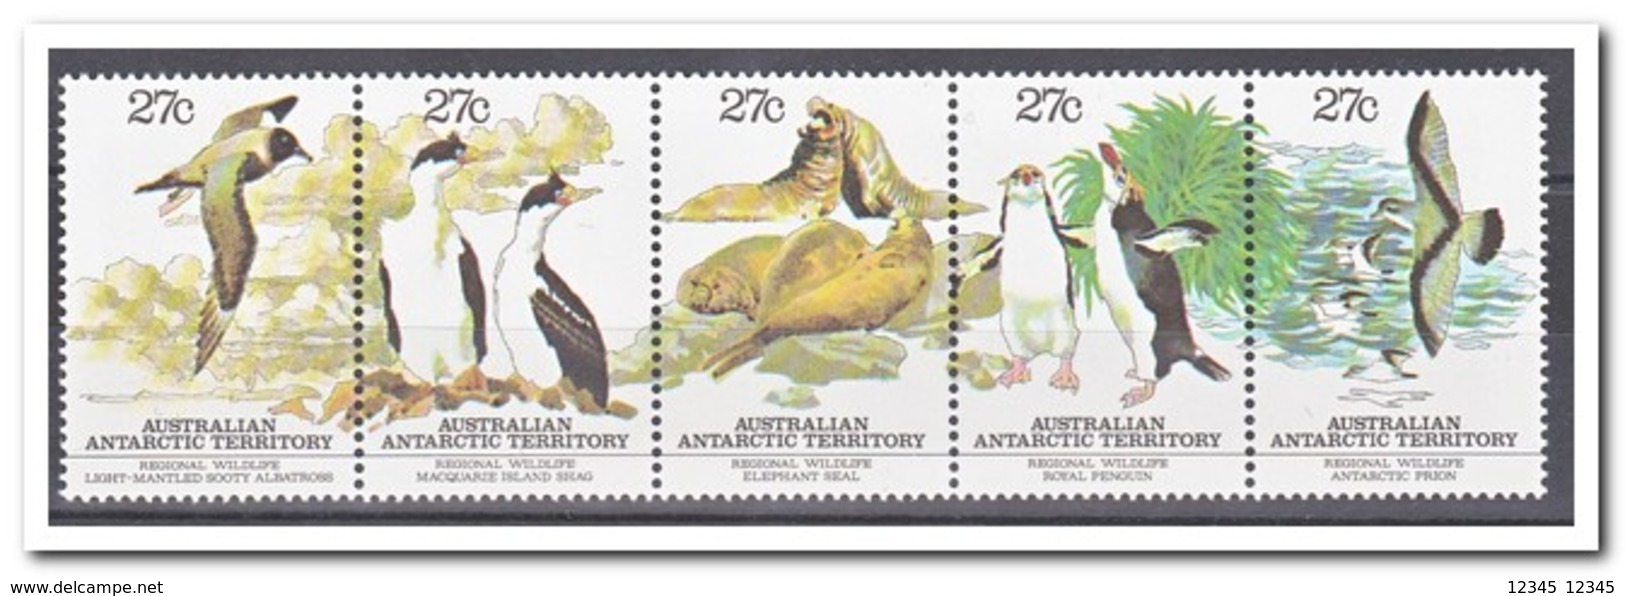 Australisch Antarctica 1983, Postfris MNH, Birds, Wildlife, Animals - Ongebruikt